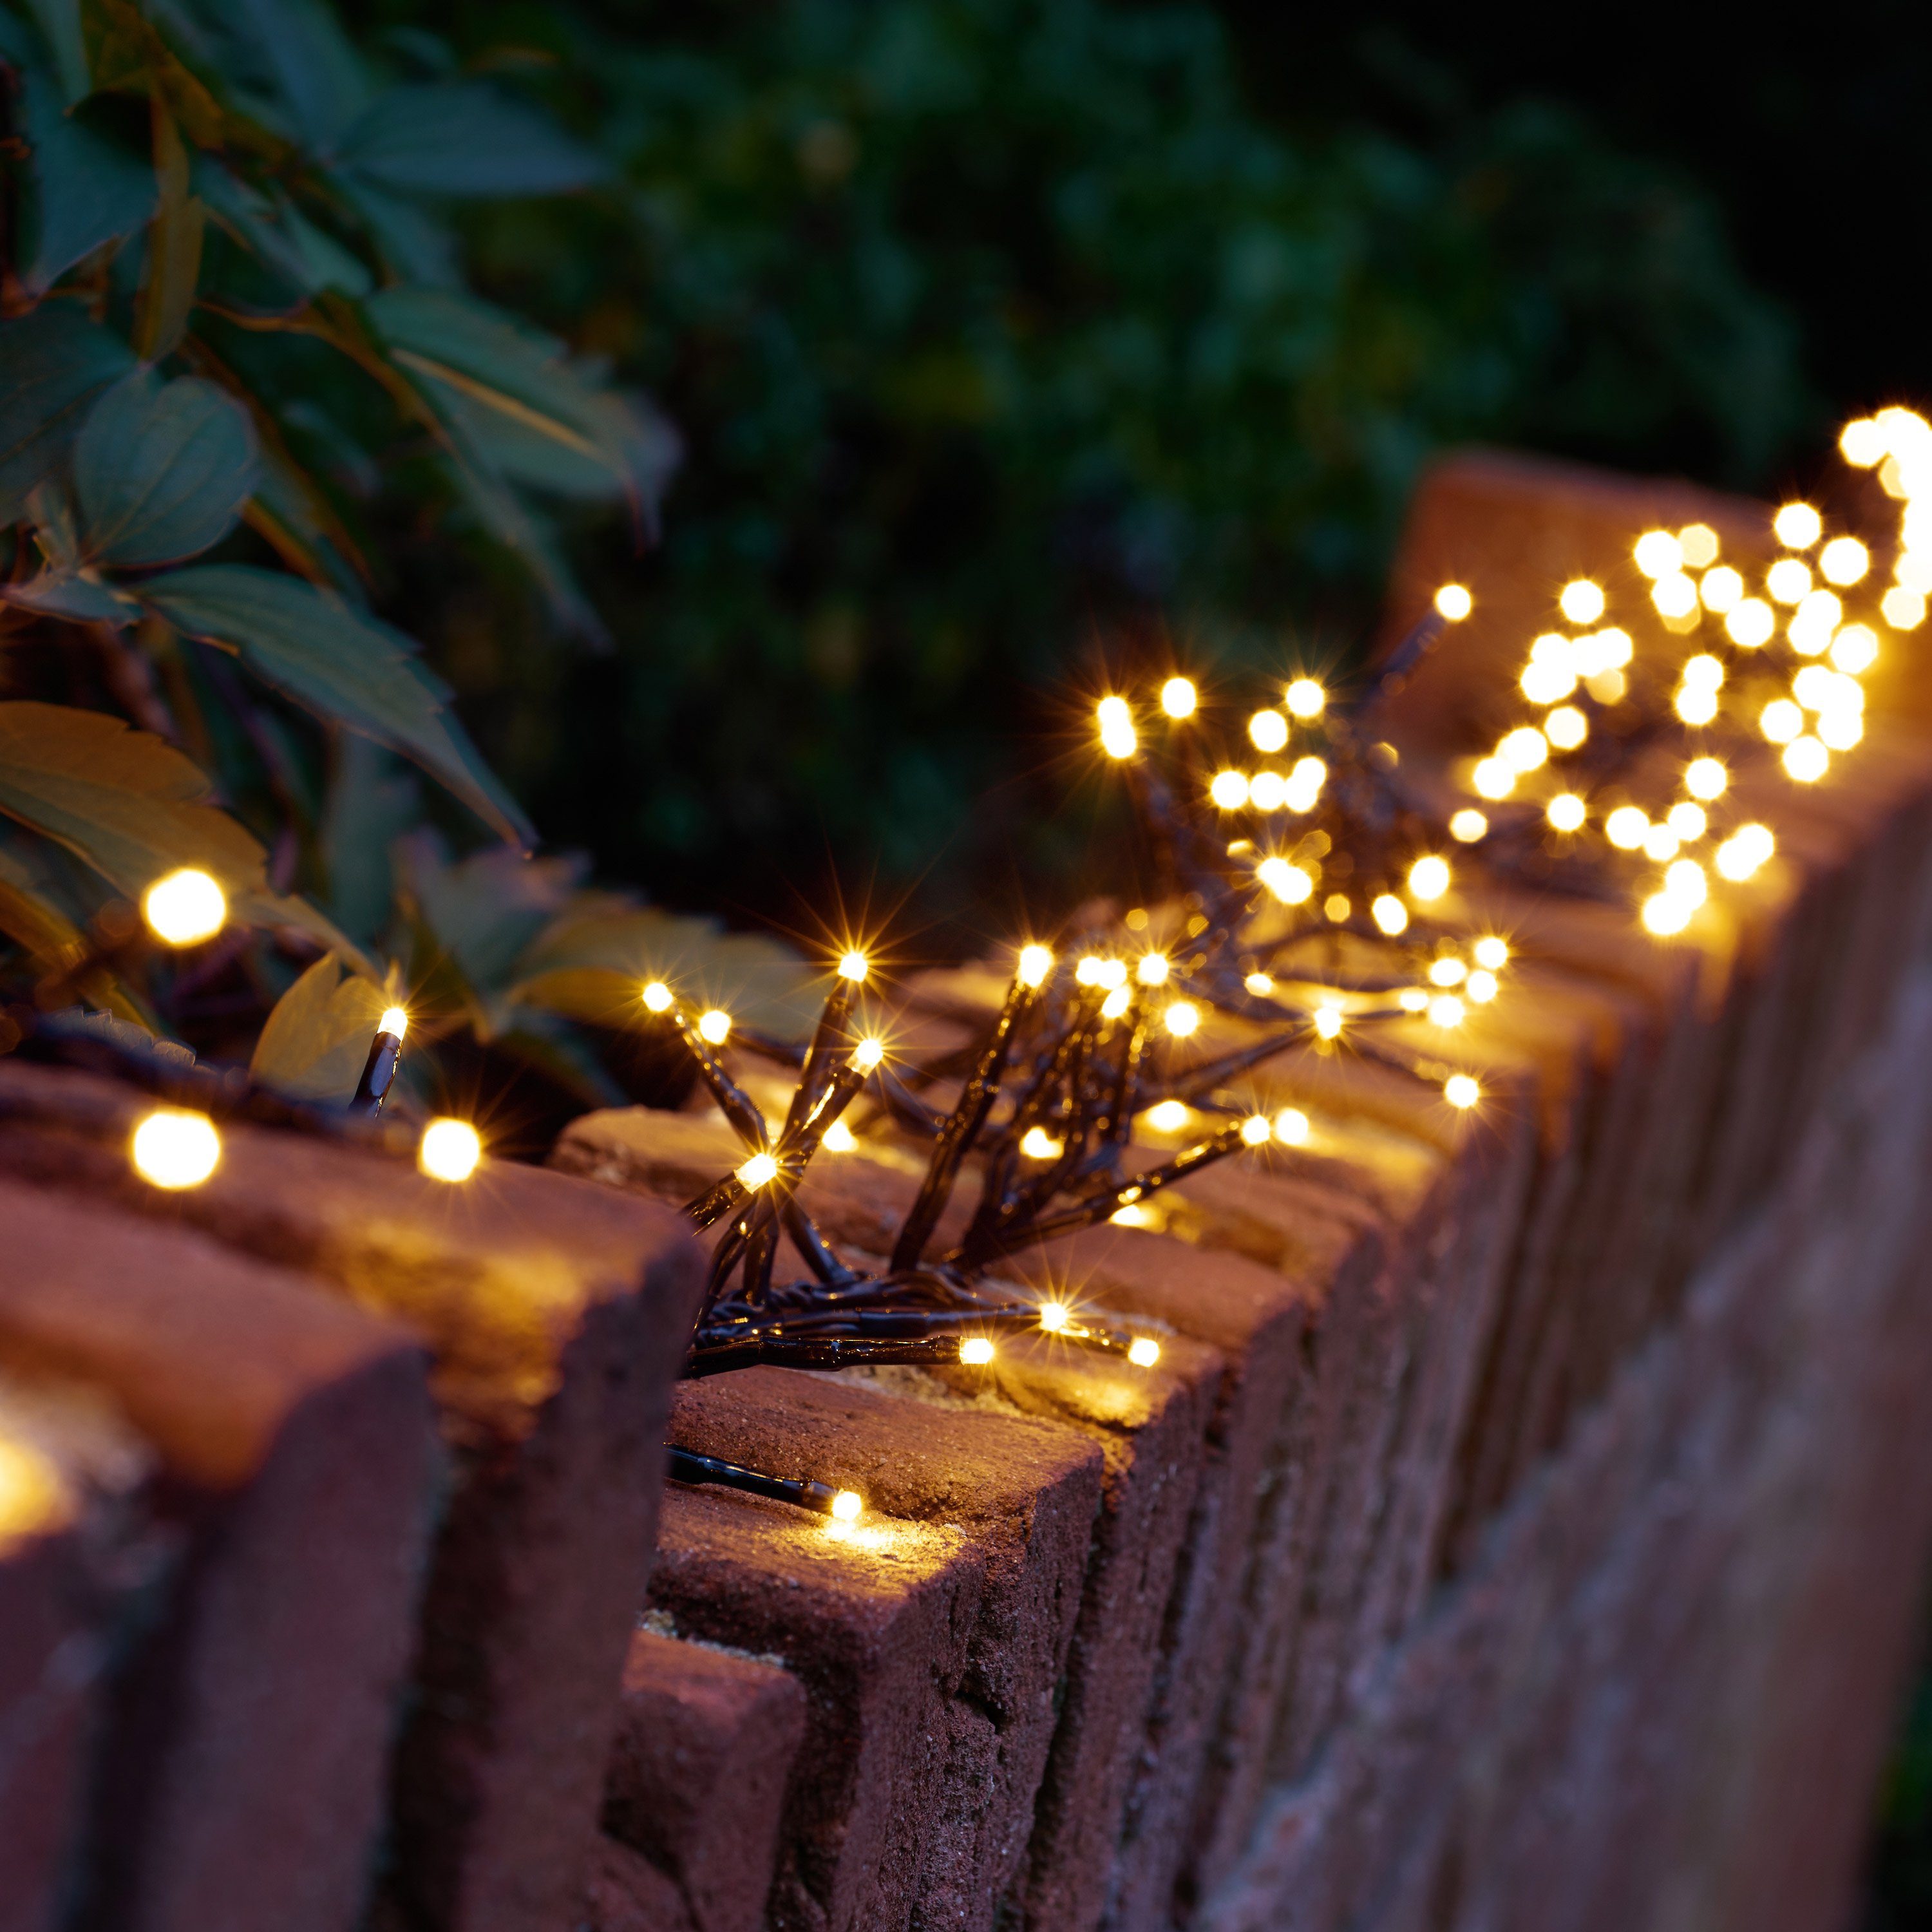 kamelshopping LED-Lichterkette 200er LED Lichterkette für Innen- und Außen,  ca. 29,9 m, 8 Lichtfunktionen, grünes Kabel, ideal als  Weihnachtsbaumbeleuchtung, Weihnachtsbeleuchtung